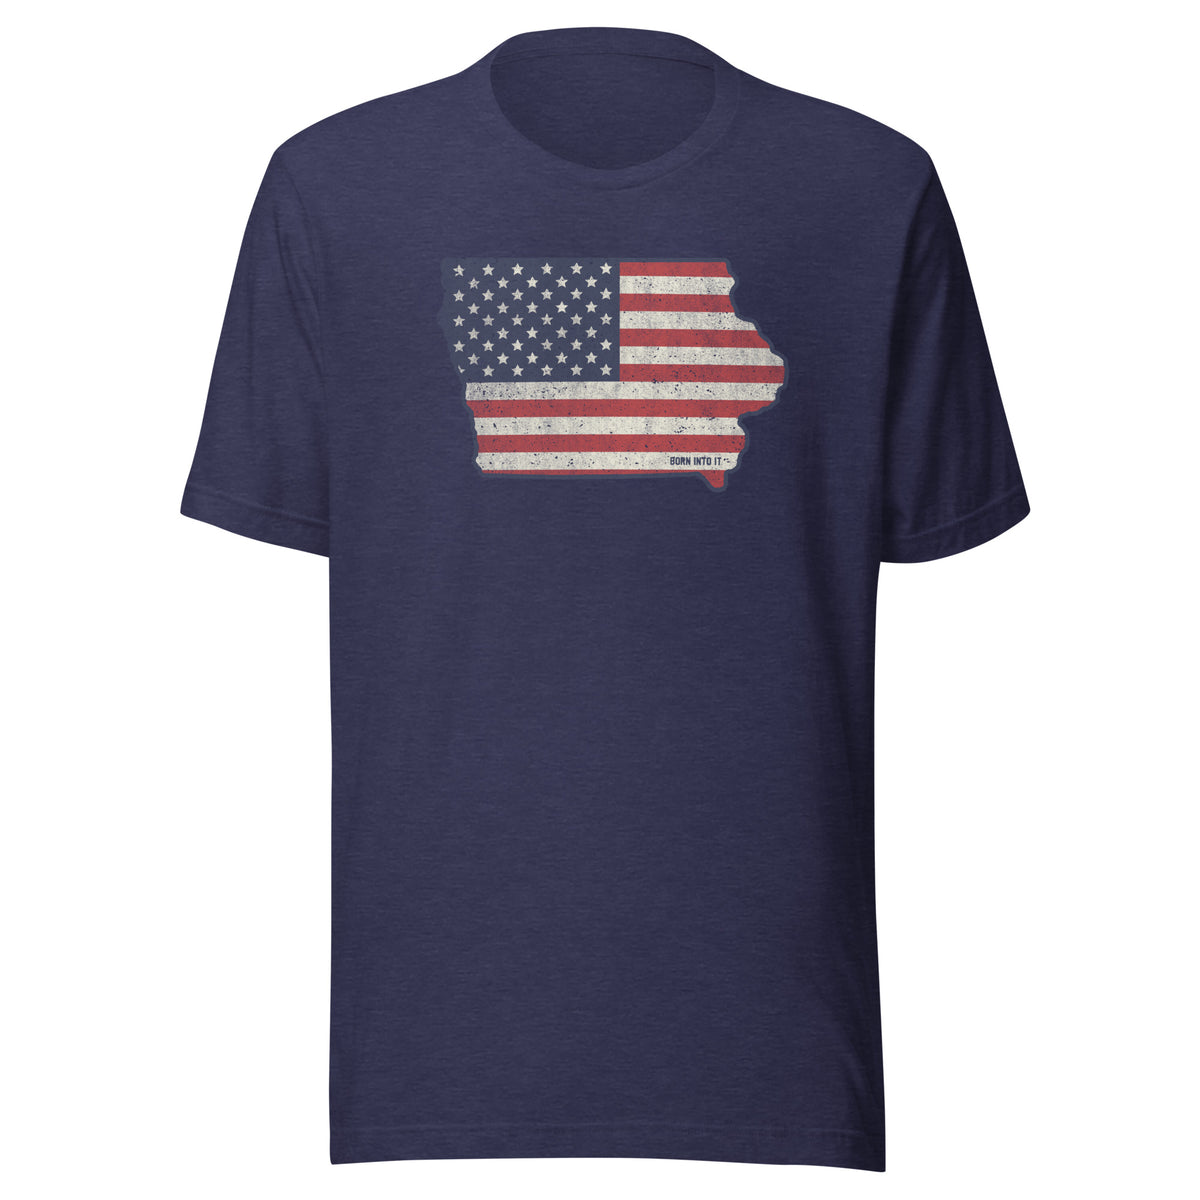 Iowa Stars & Stripes Unisex t-shirt